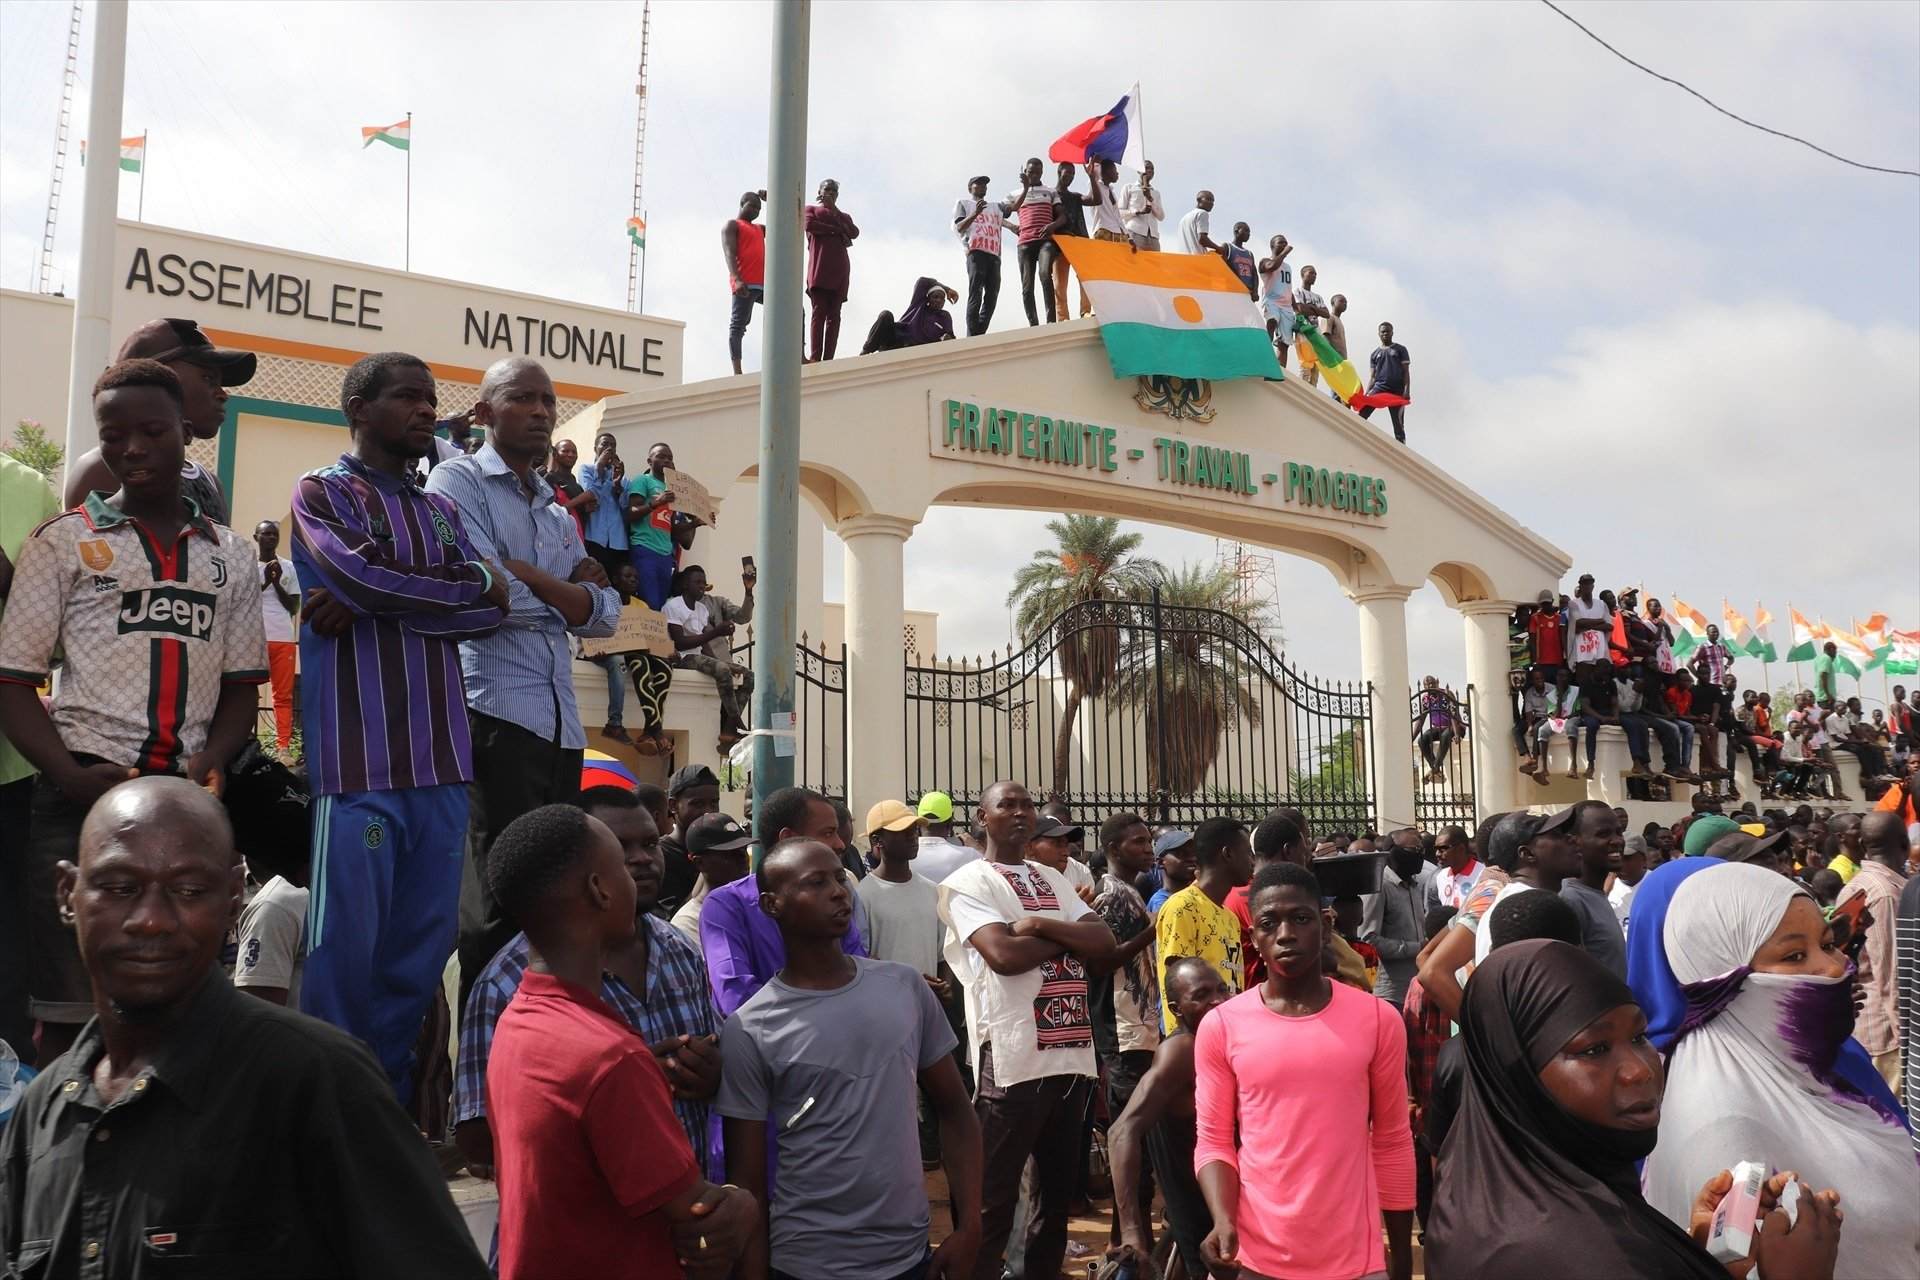 Les protestes a Níger, la verema a França i més: la volta al món en 15 fotos